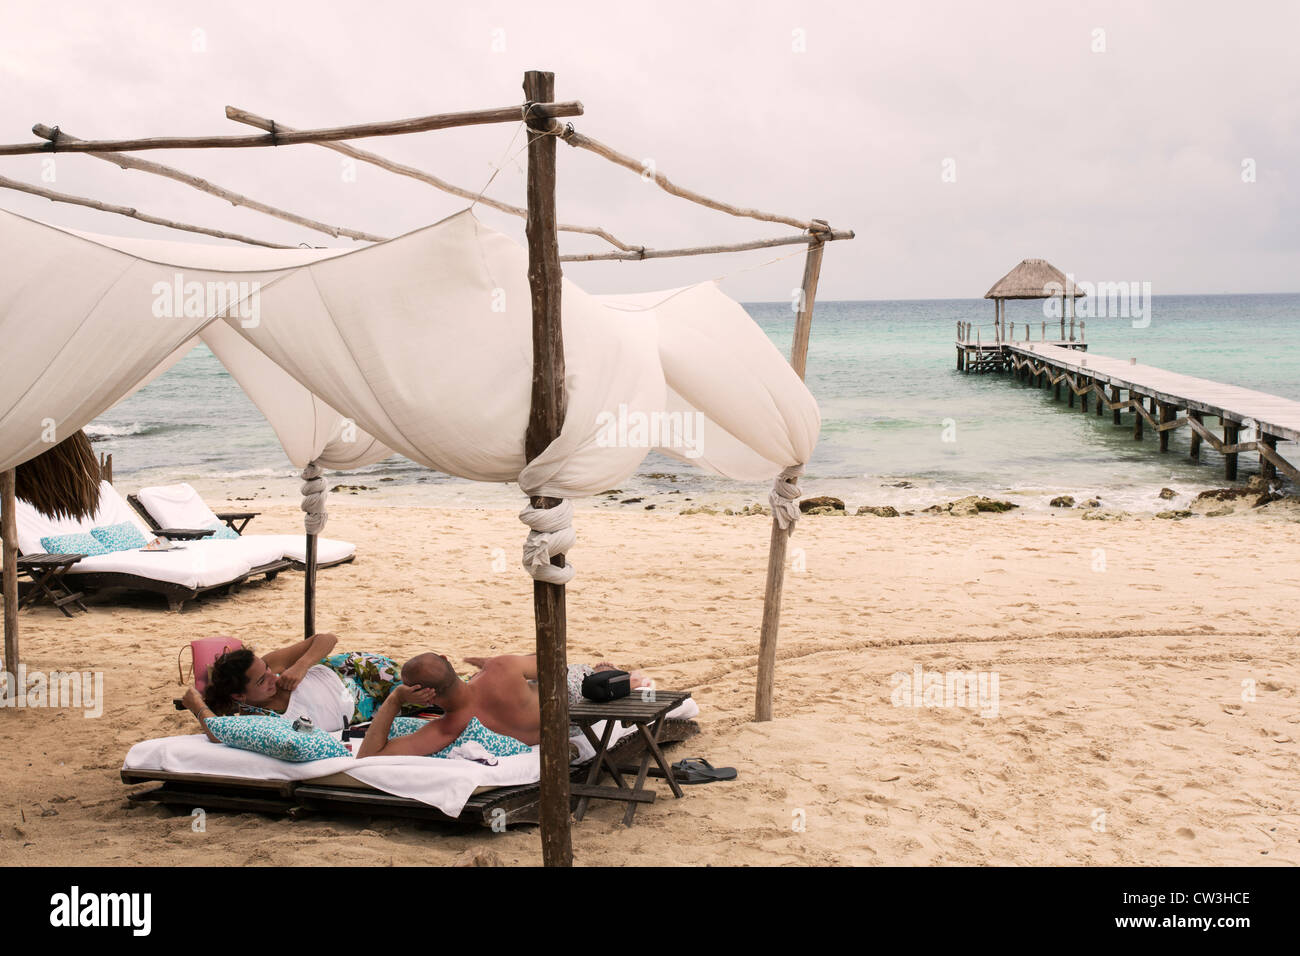 Spiaggia Playa del Carmen,giovane rilassante sotto una tettoia Foto Stock